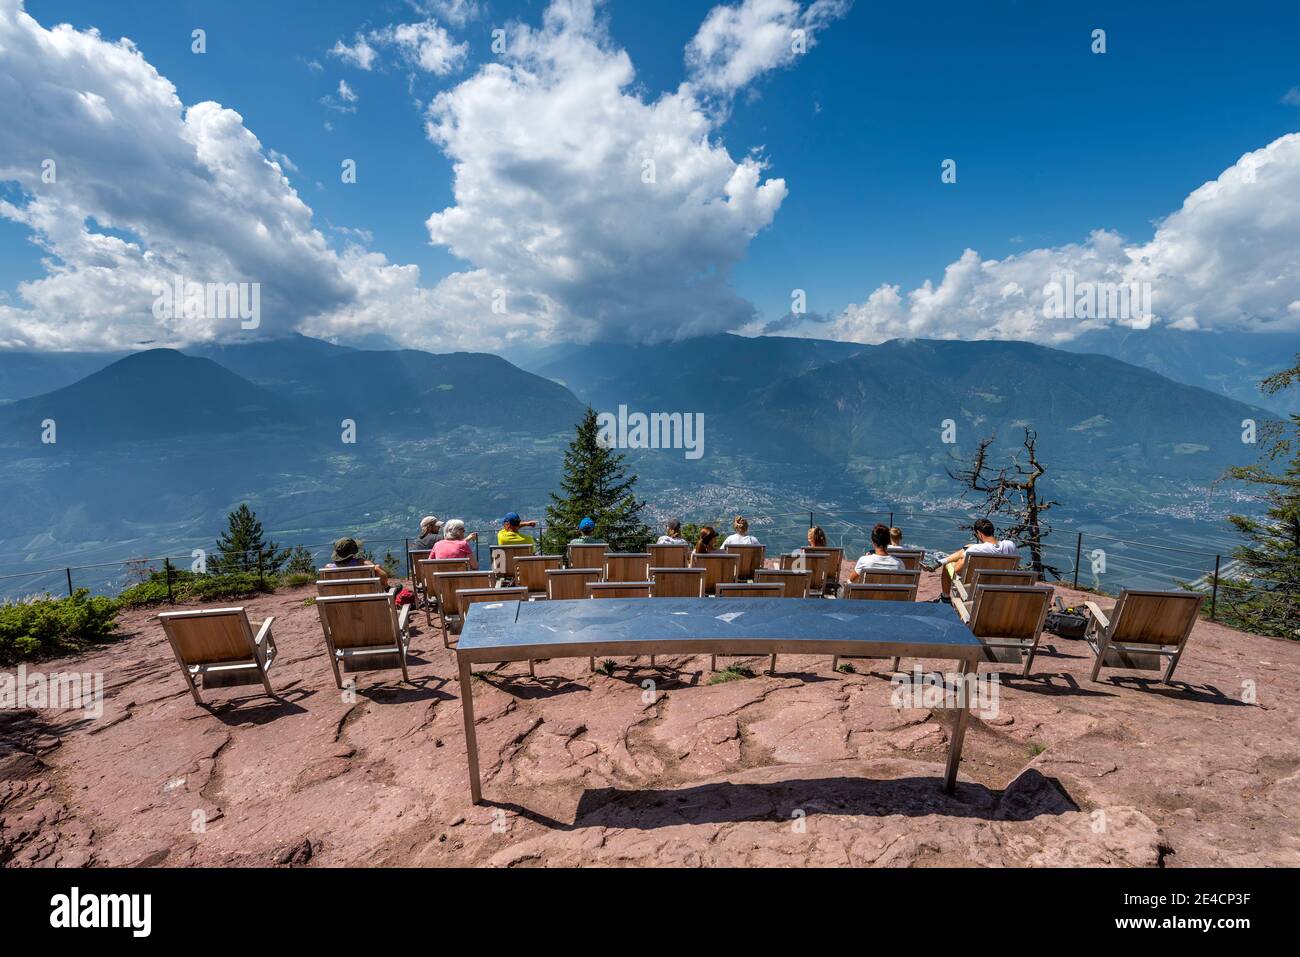 Verano, province de Bolzano, Tyrol du Sud, Italie. Le Knottnkino sur Rotsteinkogel, dans la vallée du village de Lana Banque D'Images